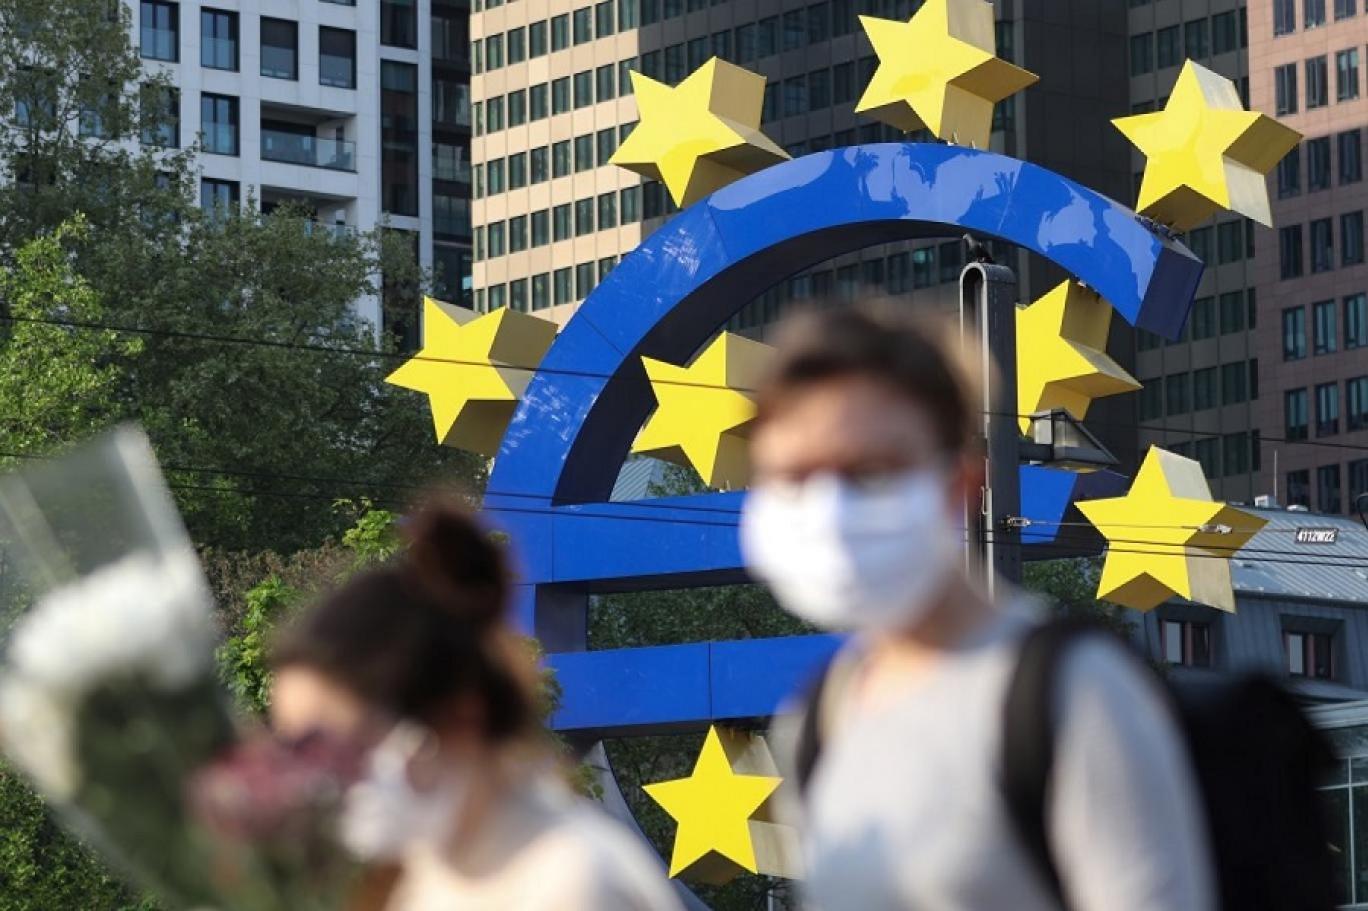  الاتحاد الأوروبي يخفض مجدداً توقعات النمو في منطقة اليورو